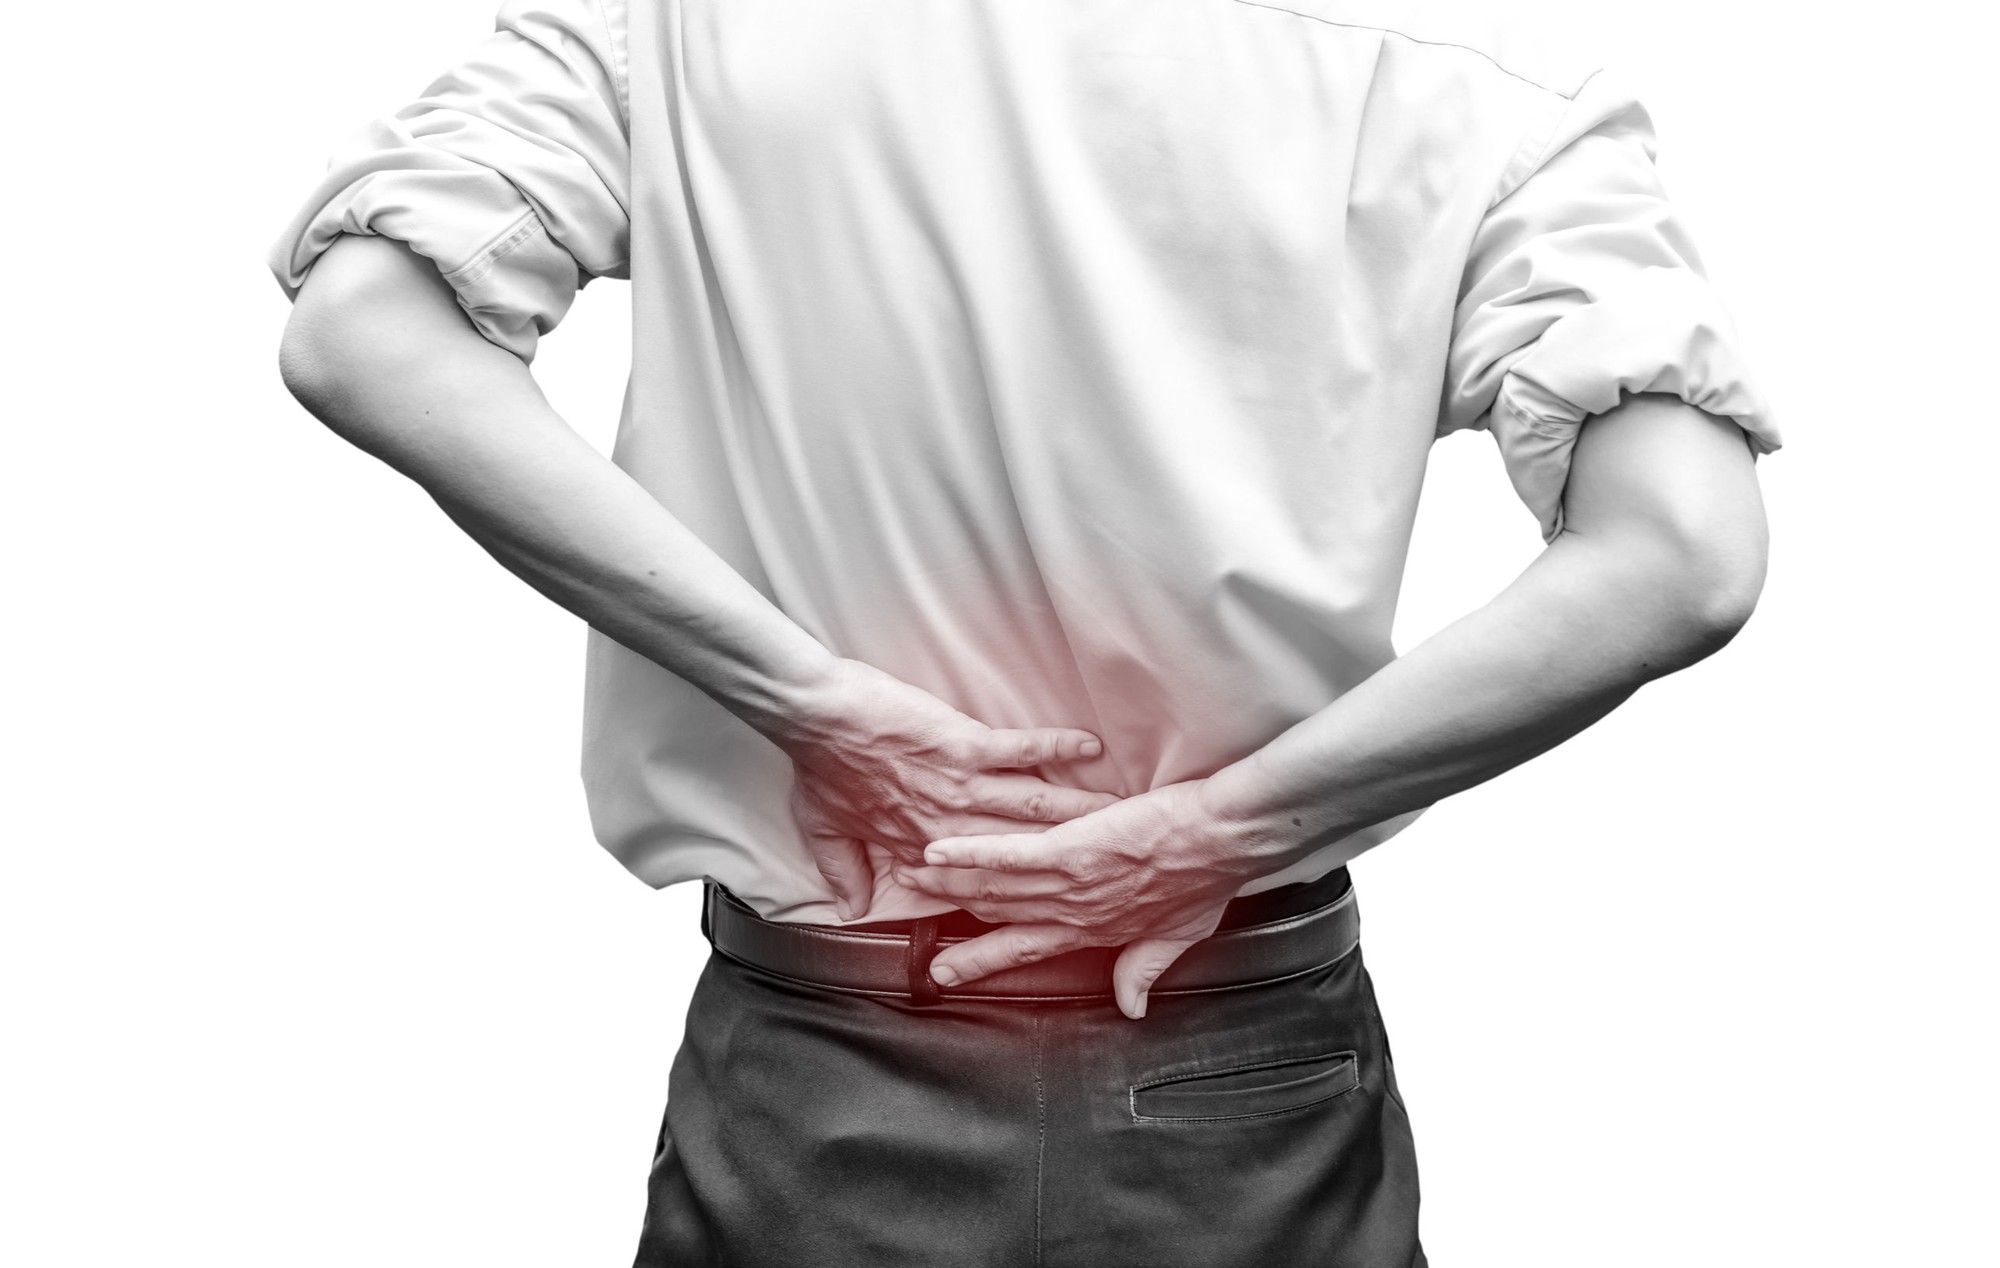   7 Cách giảm đau lưng không cần dùng thuốc  